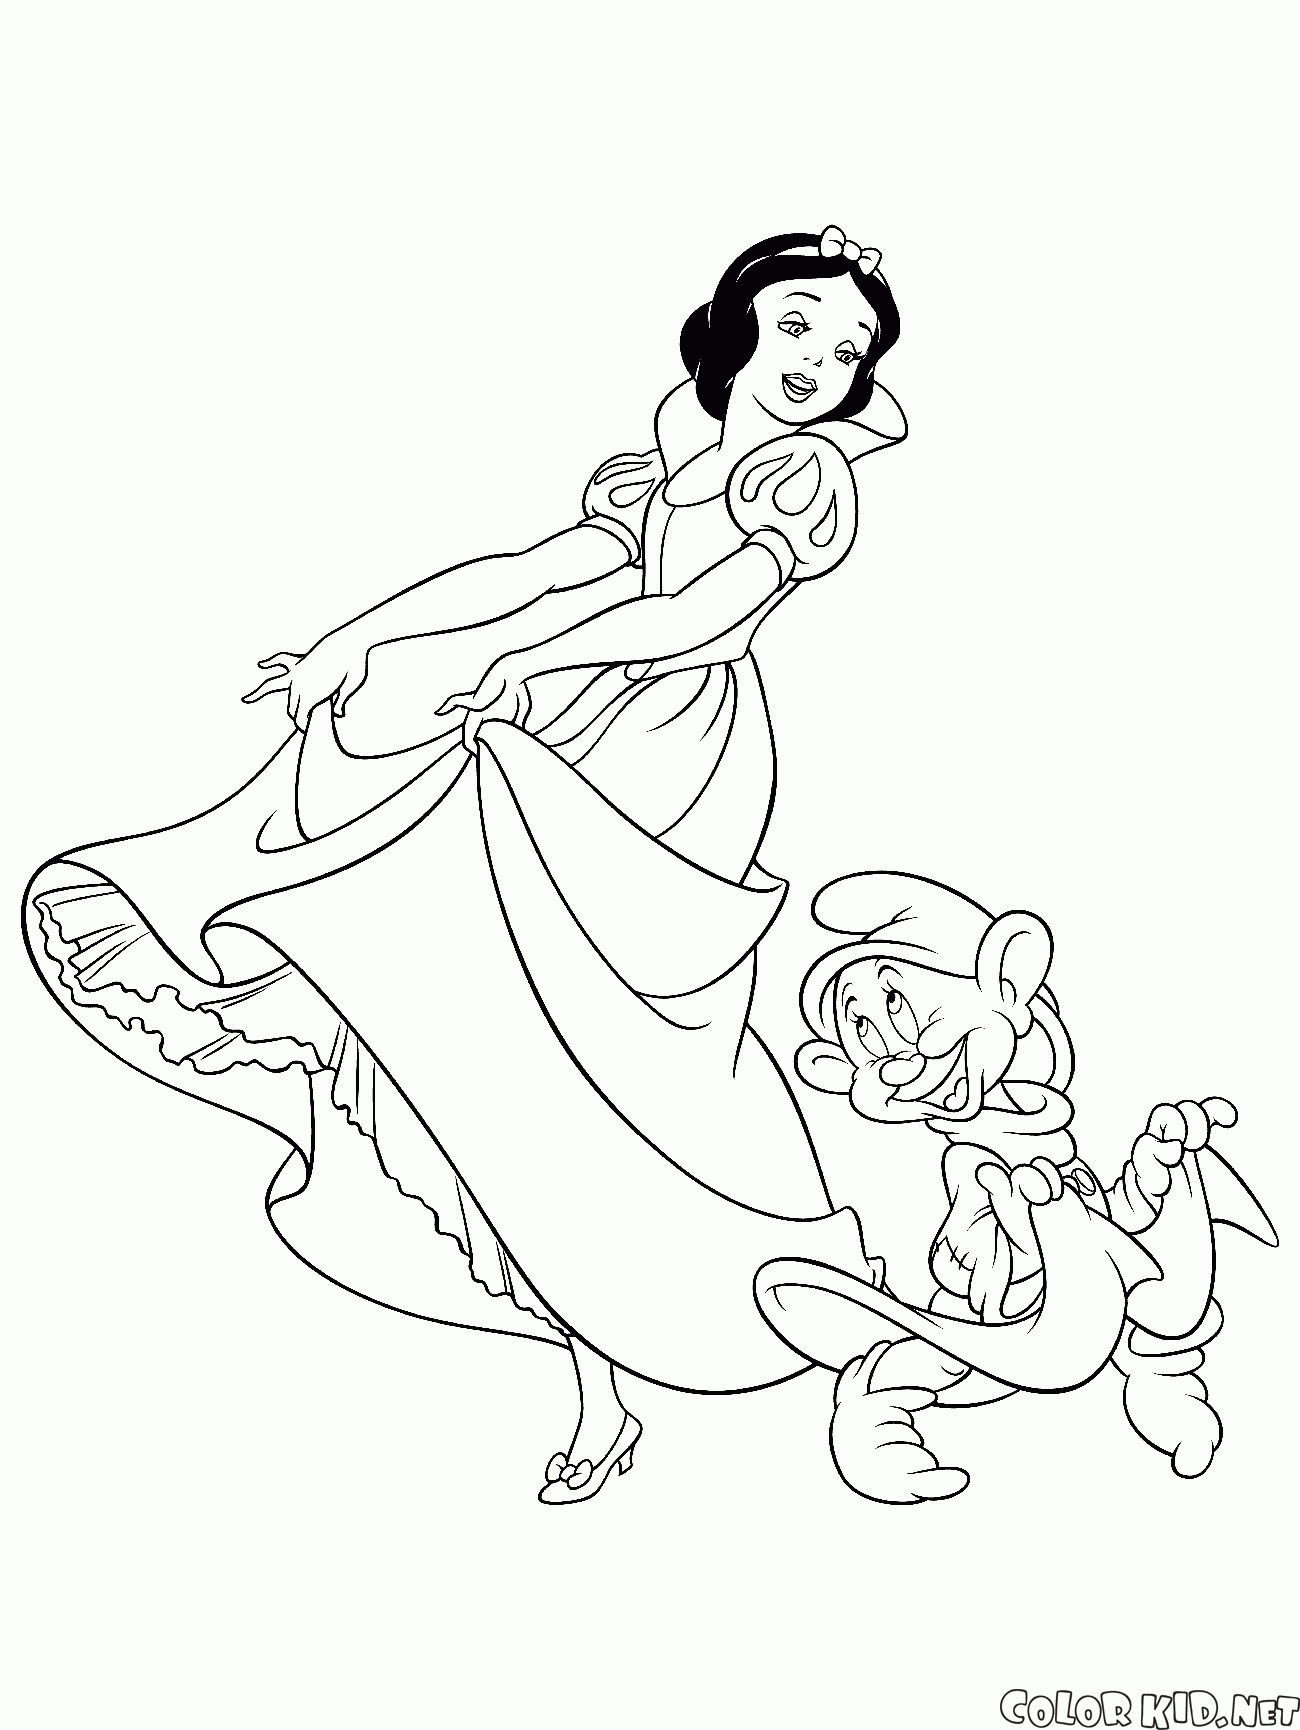 白雪公主與舞蹈矮人